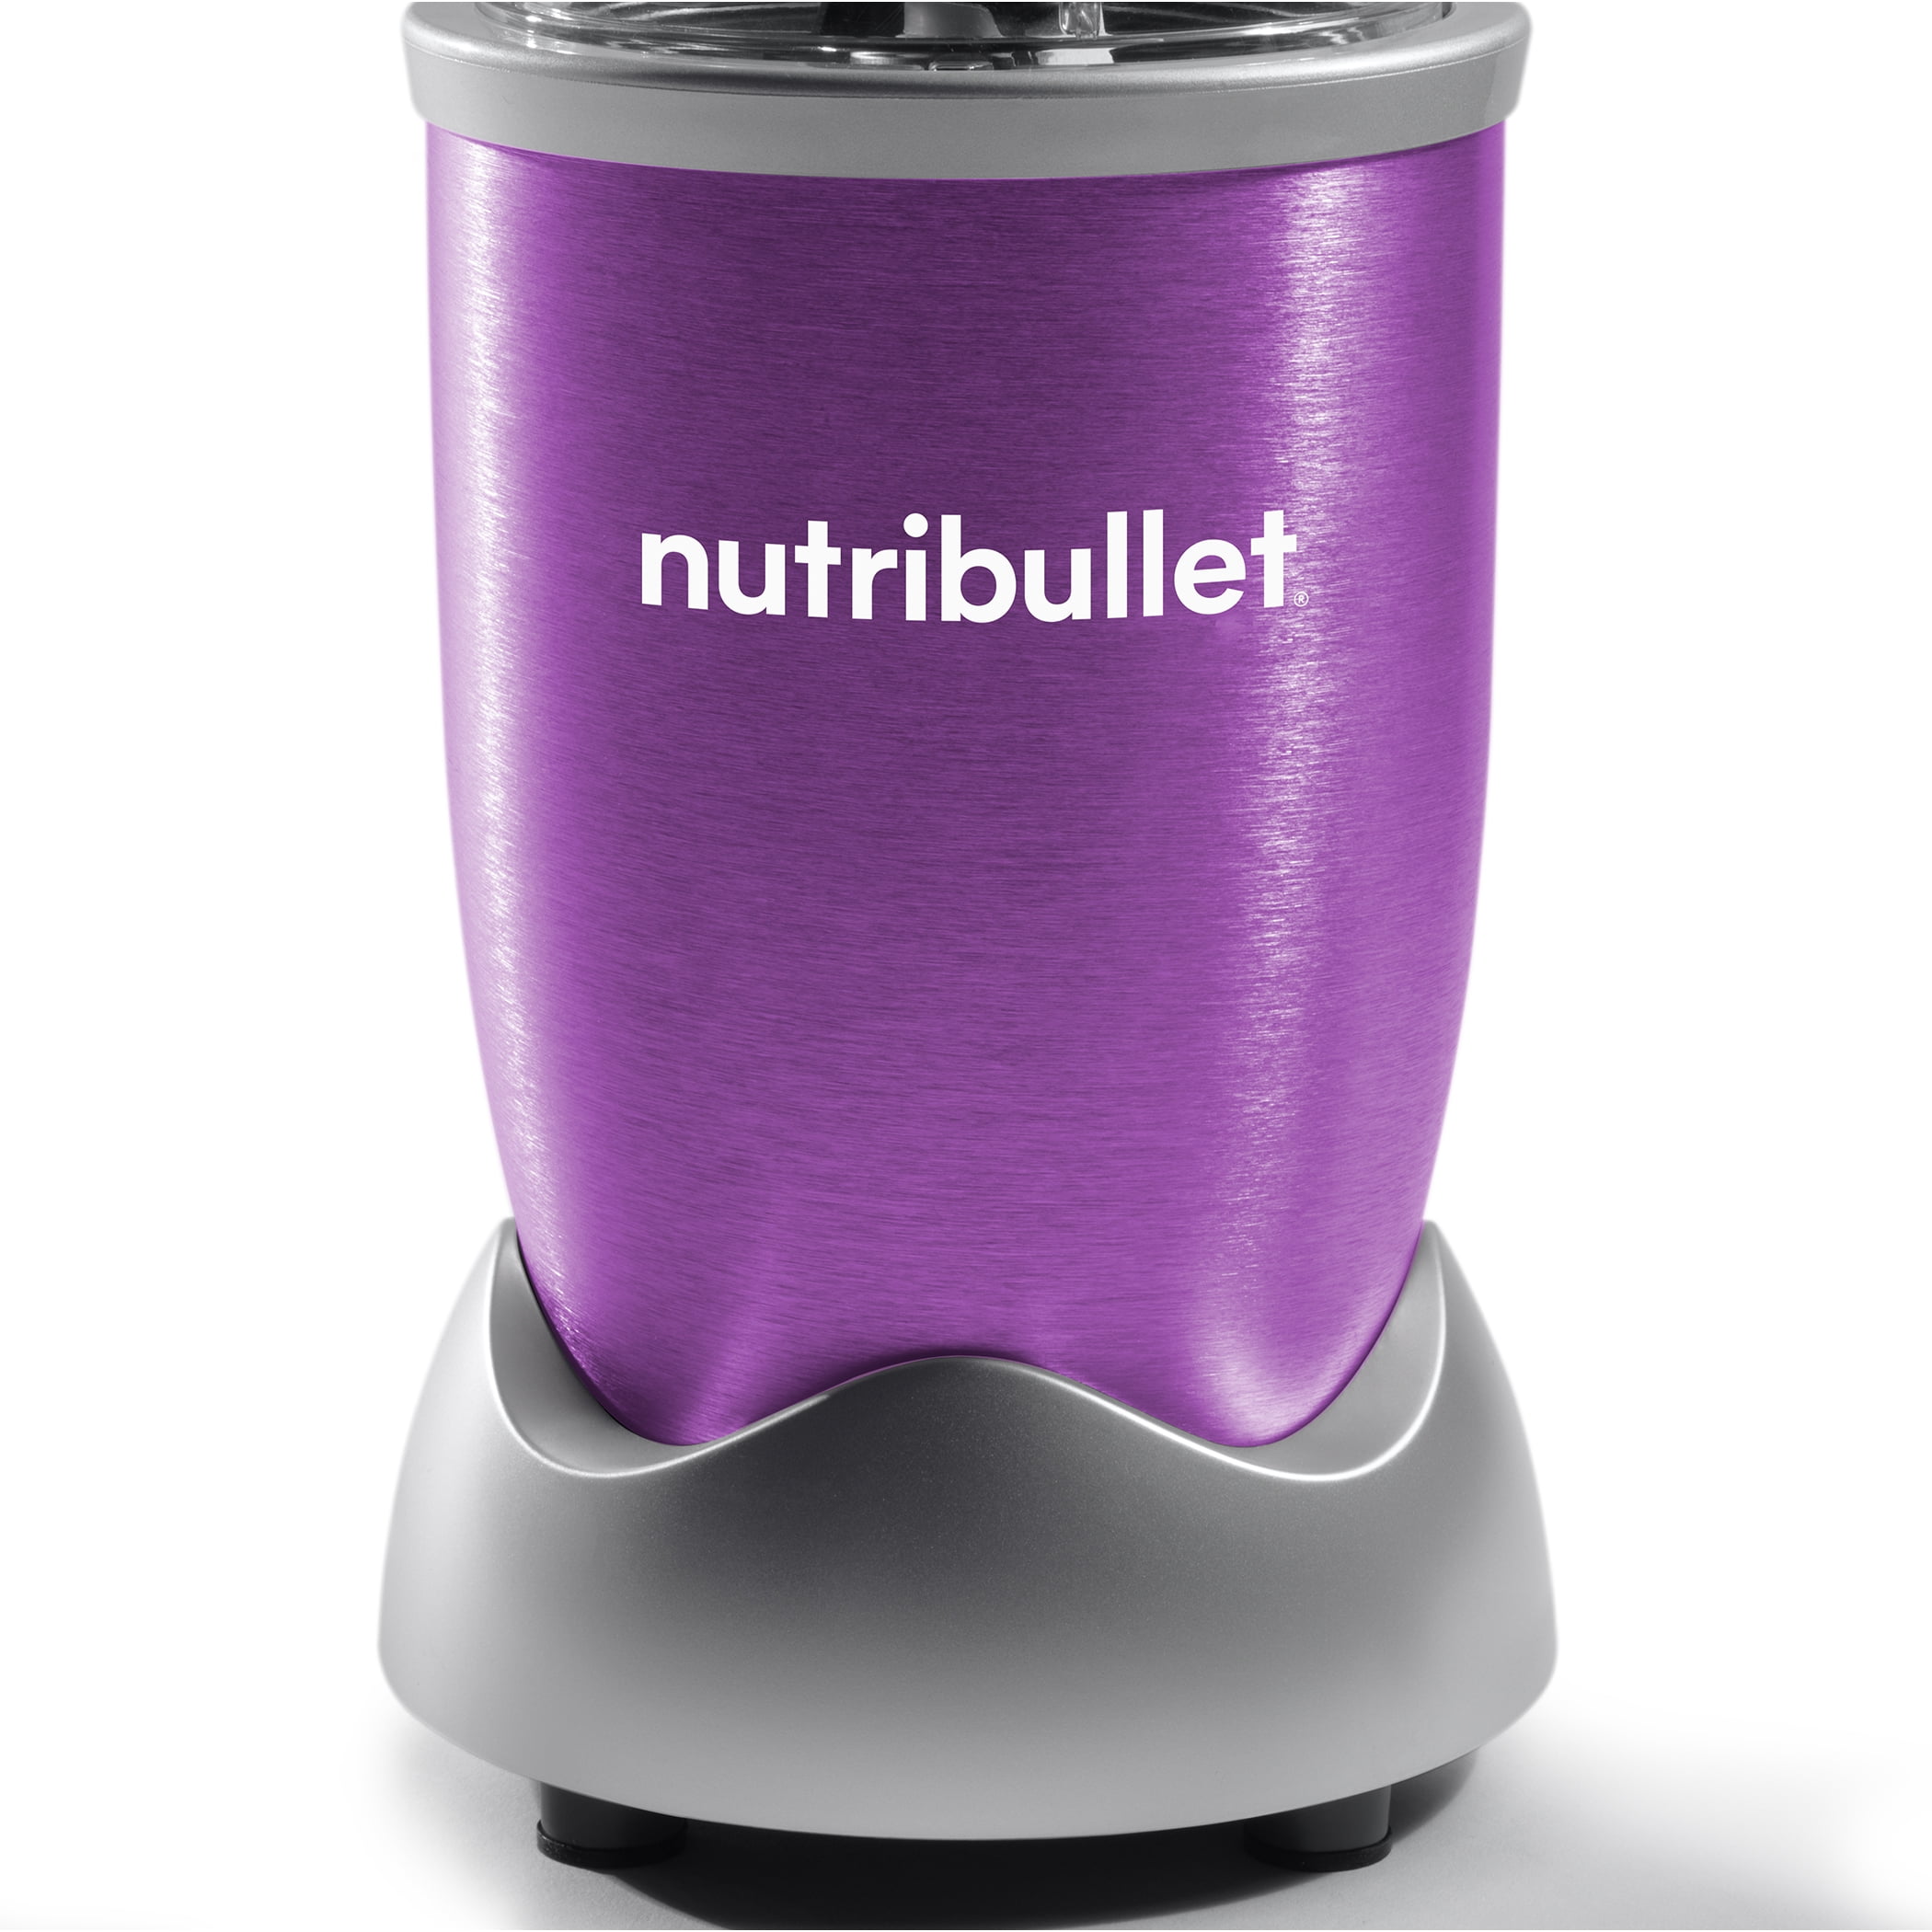 Best Buy: NutriBullet Pro 900 32-Oz. Blender Silver NB9-1501